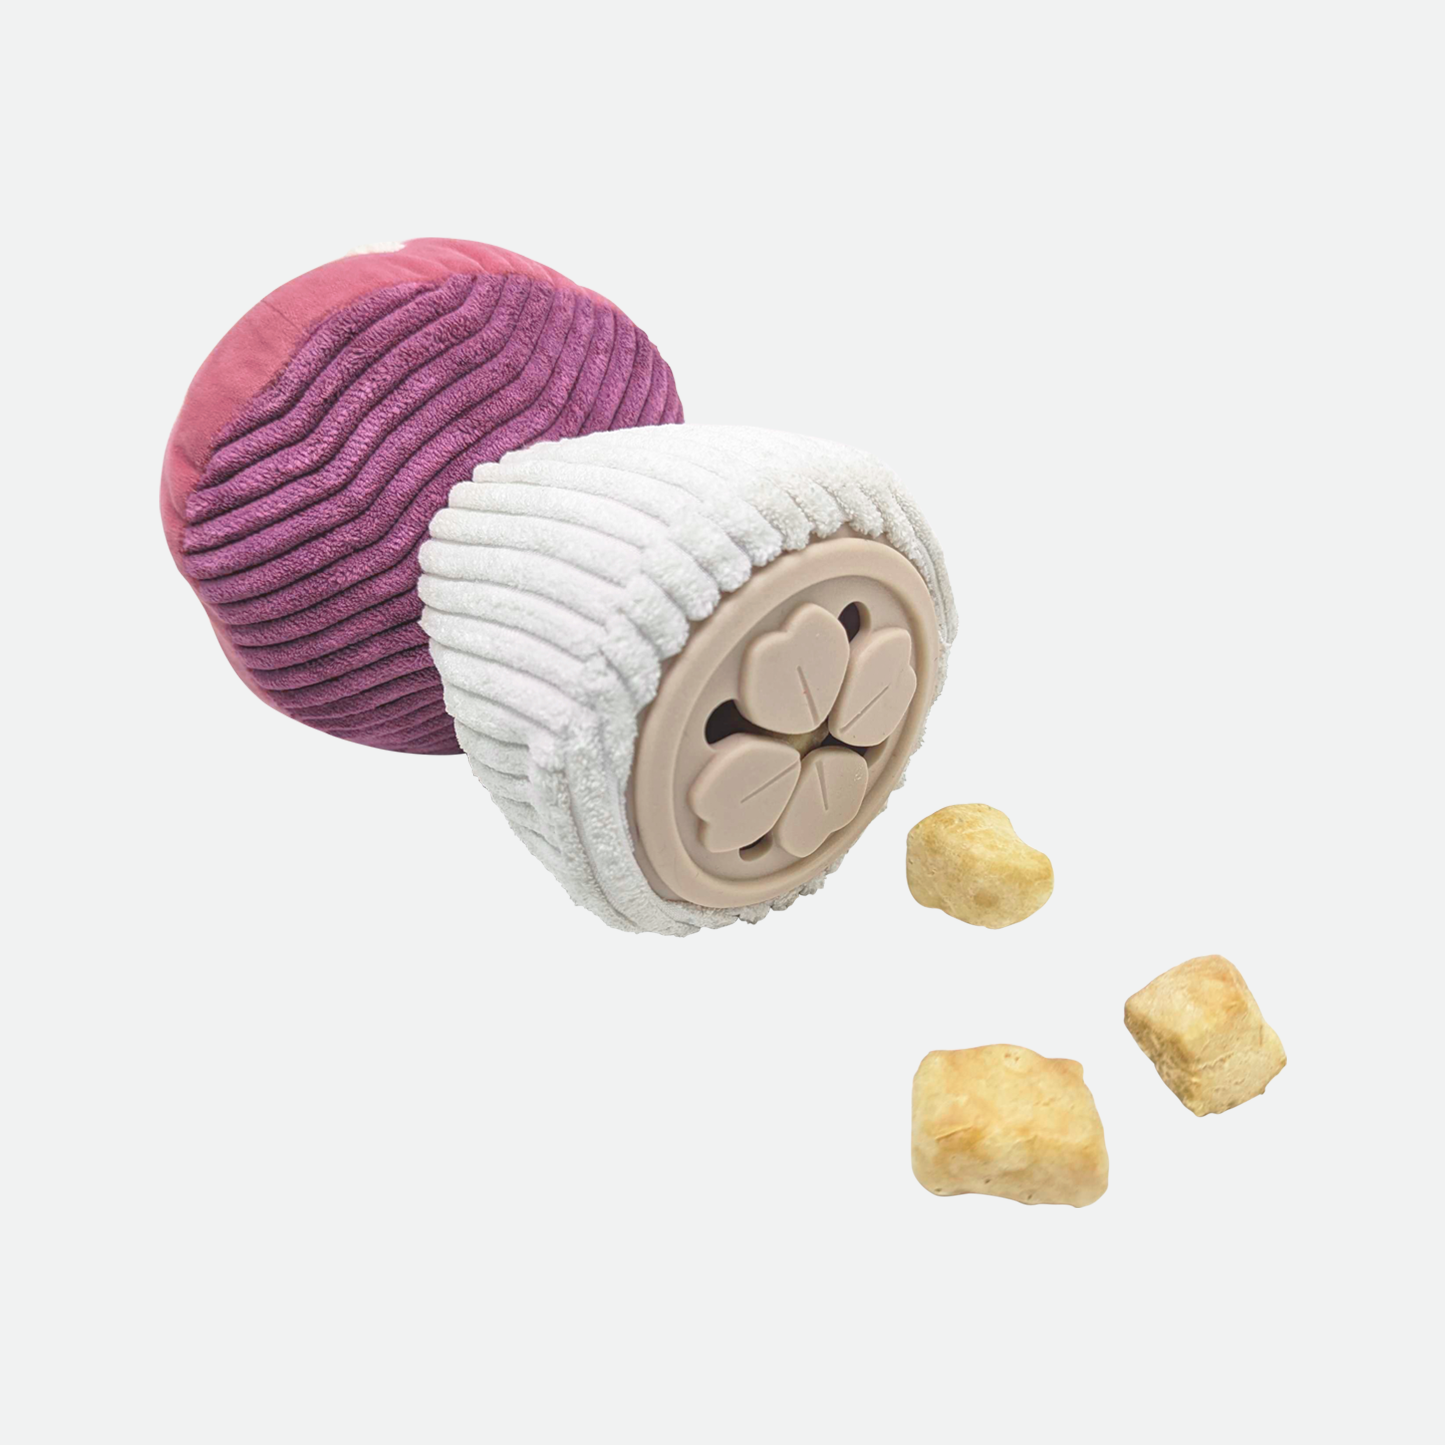 Plush toy for dog, mushroom style